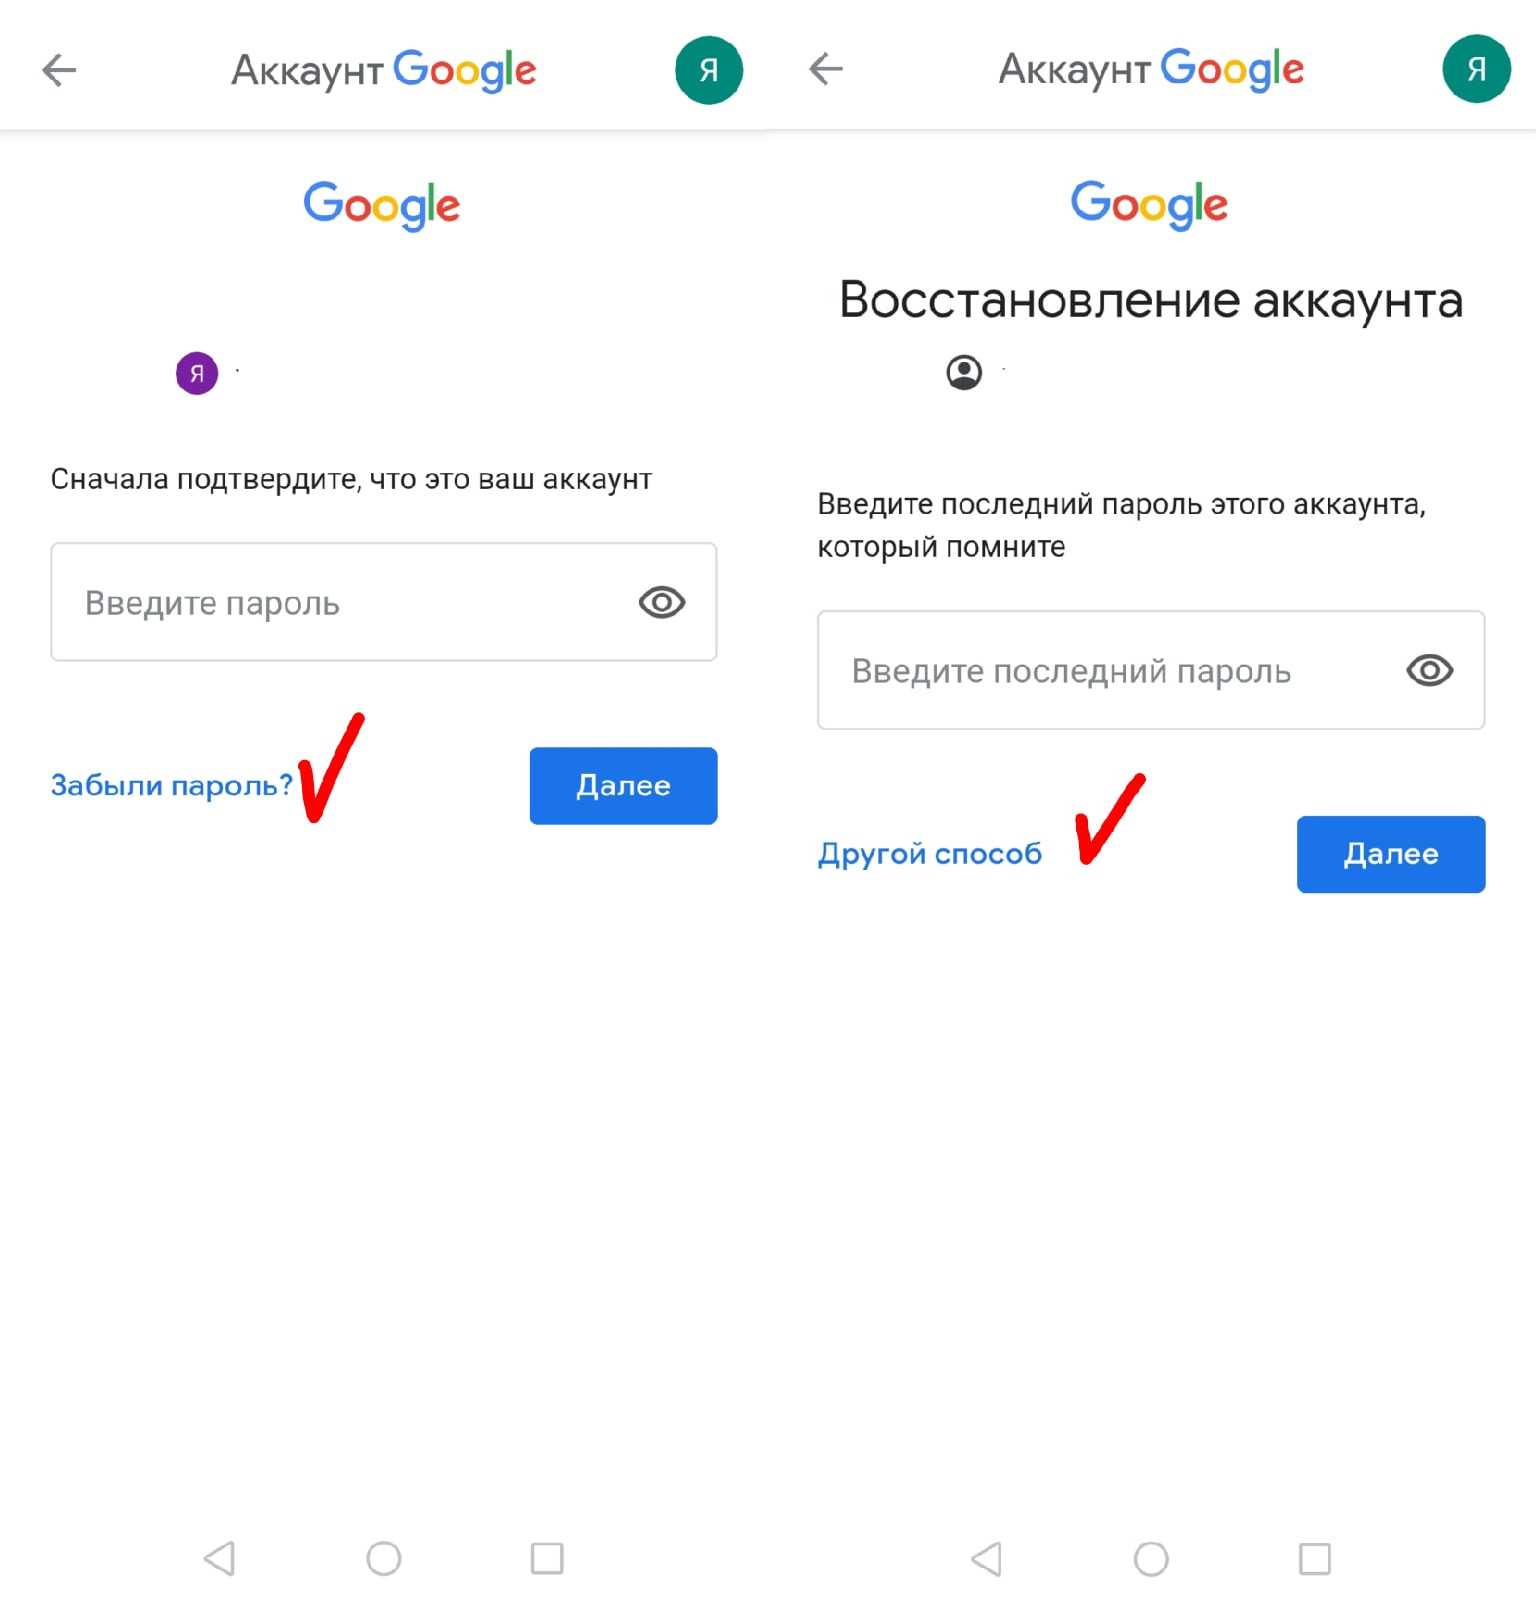 Как узнать пароль от аккаунта google на андроид?